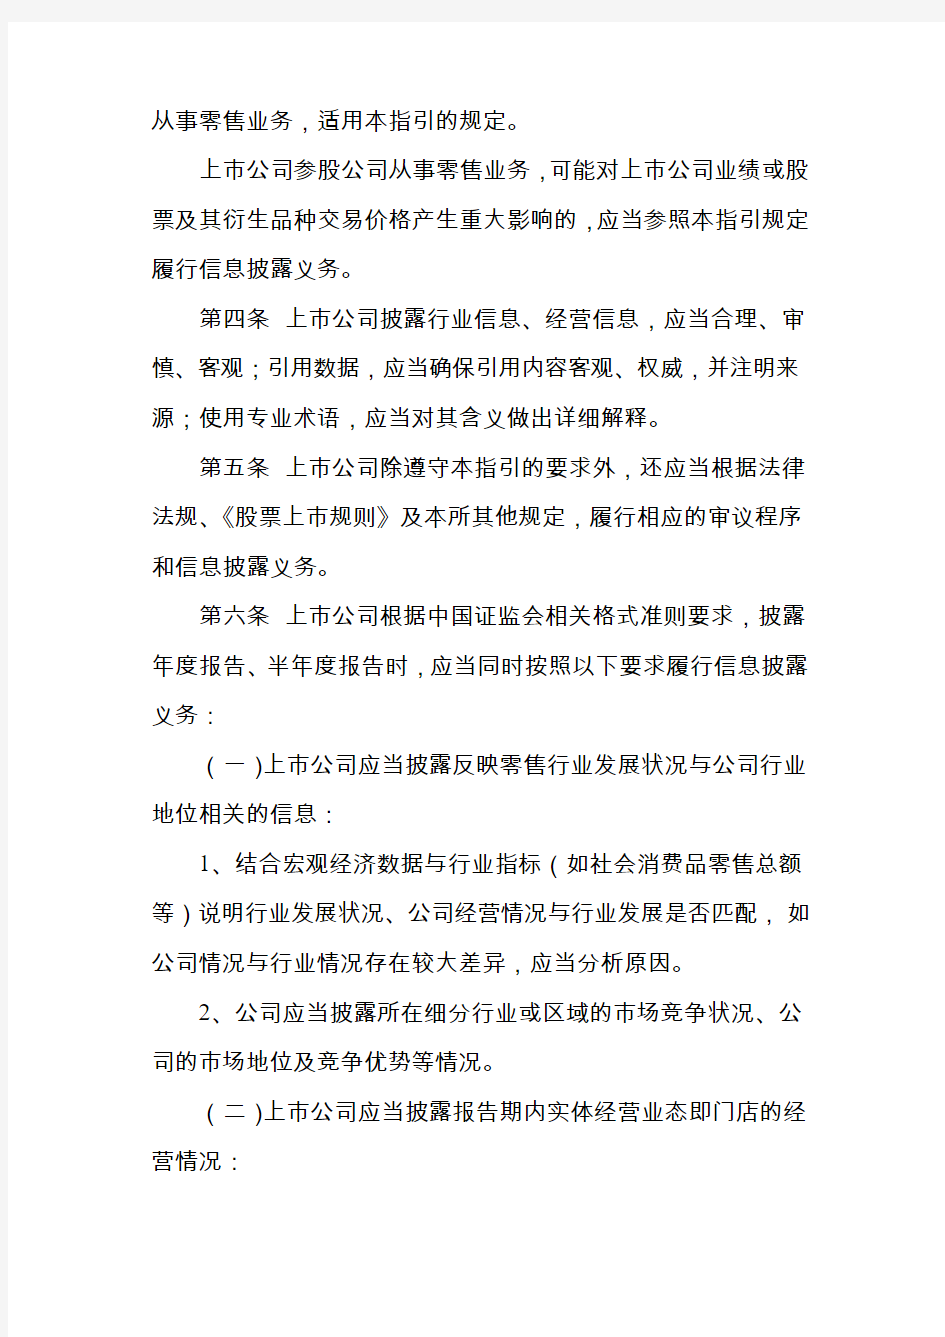 深圳证券交易所行业信息披露指引第8号——上市公司从事零售相关业务